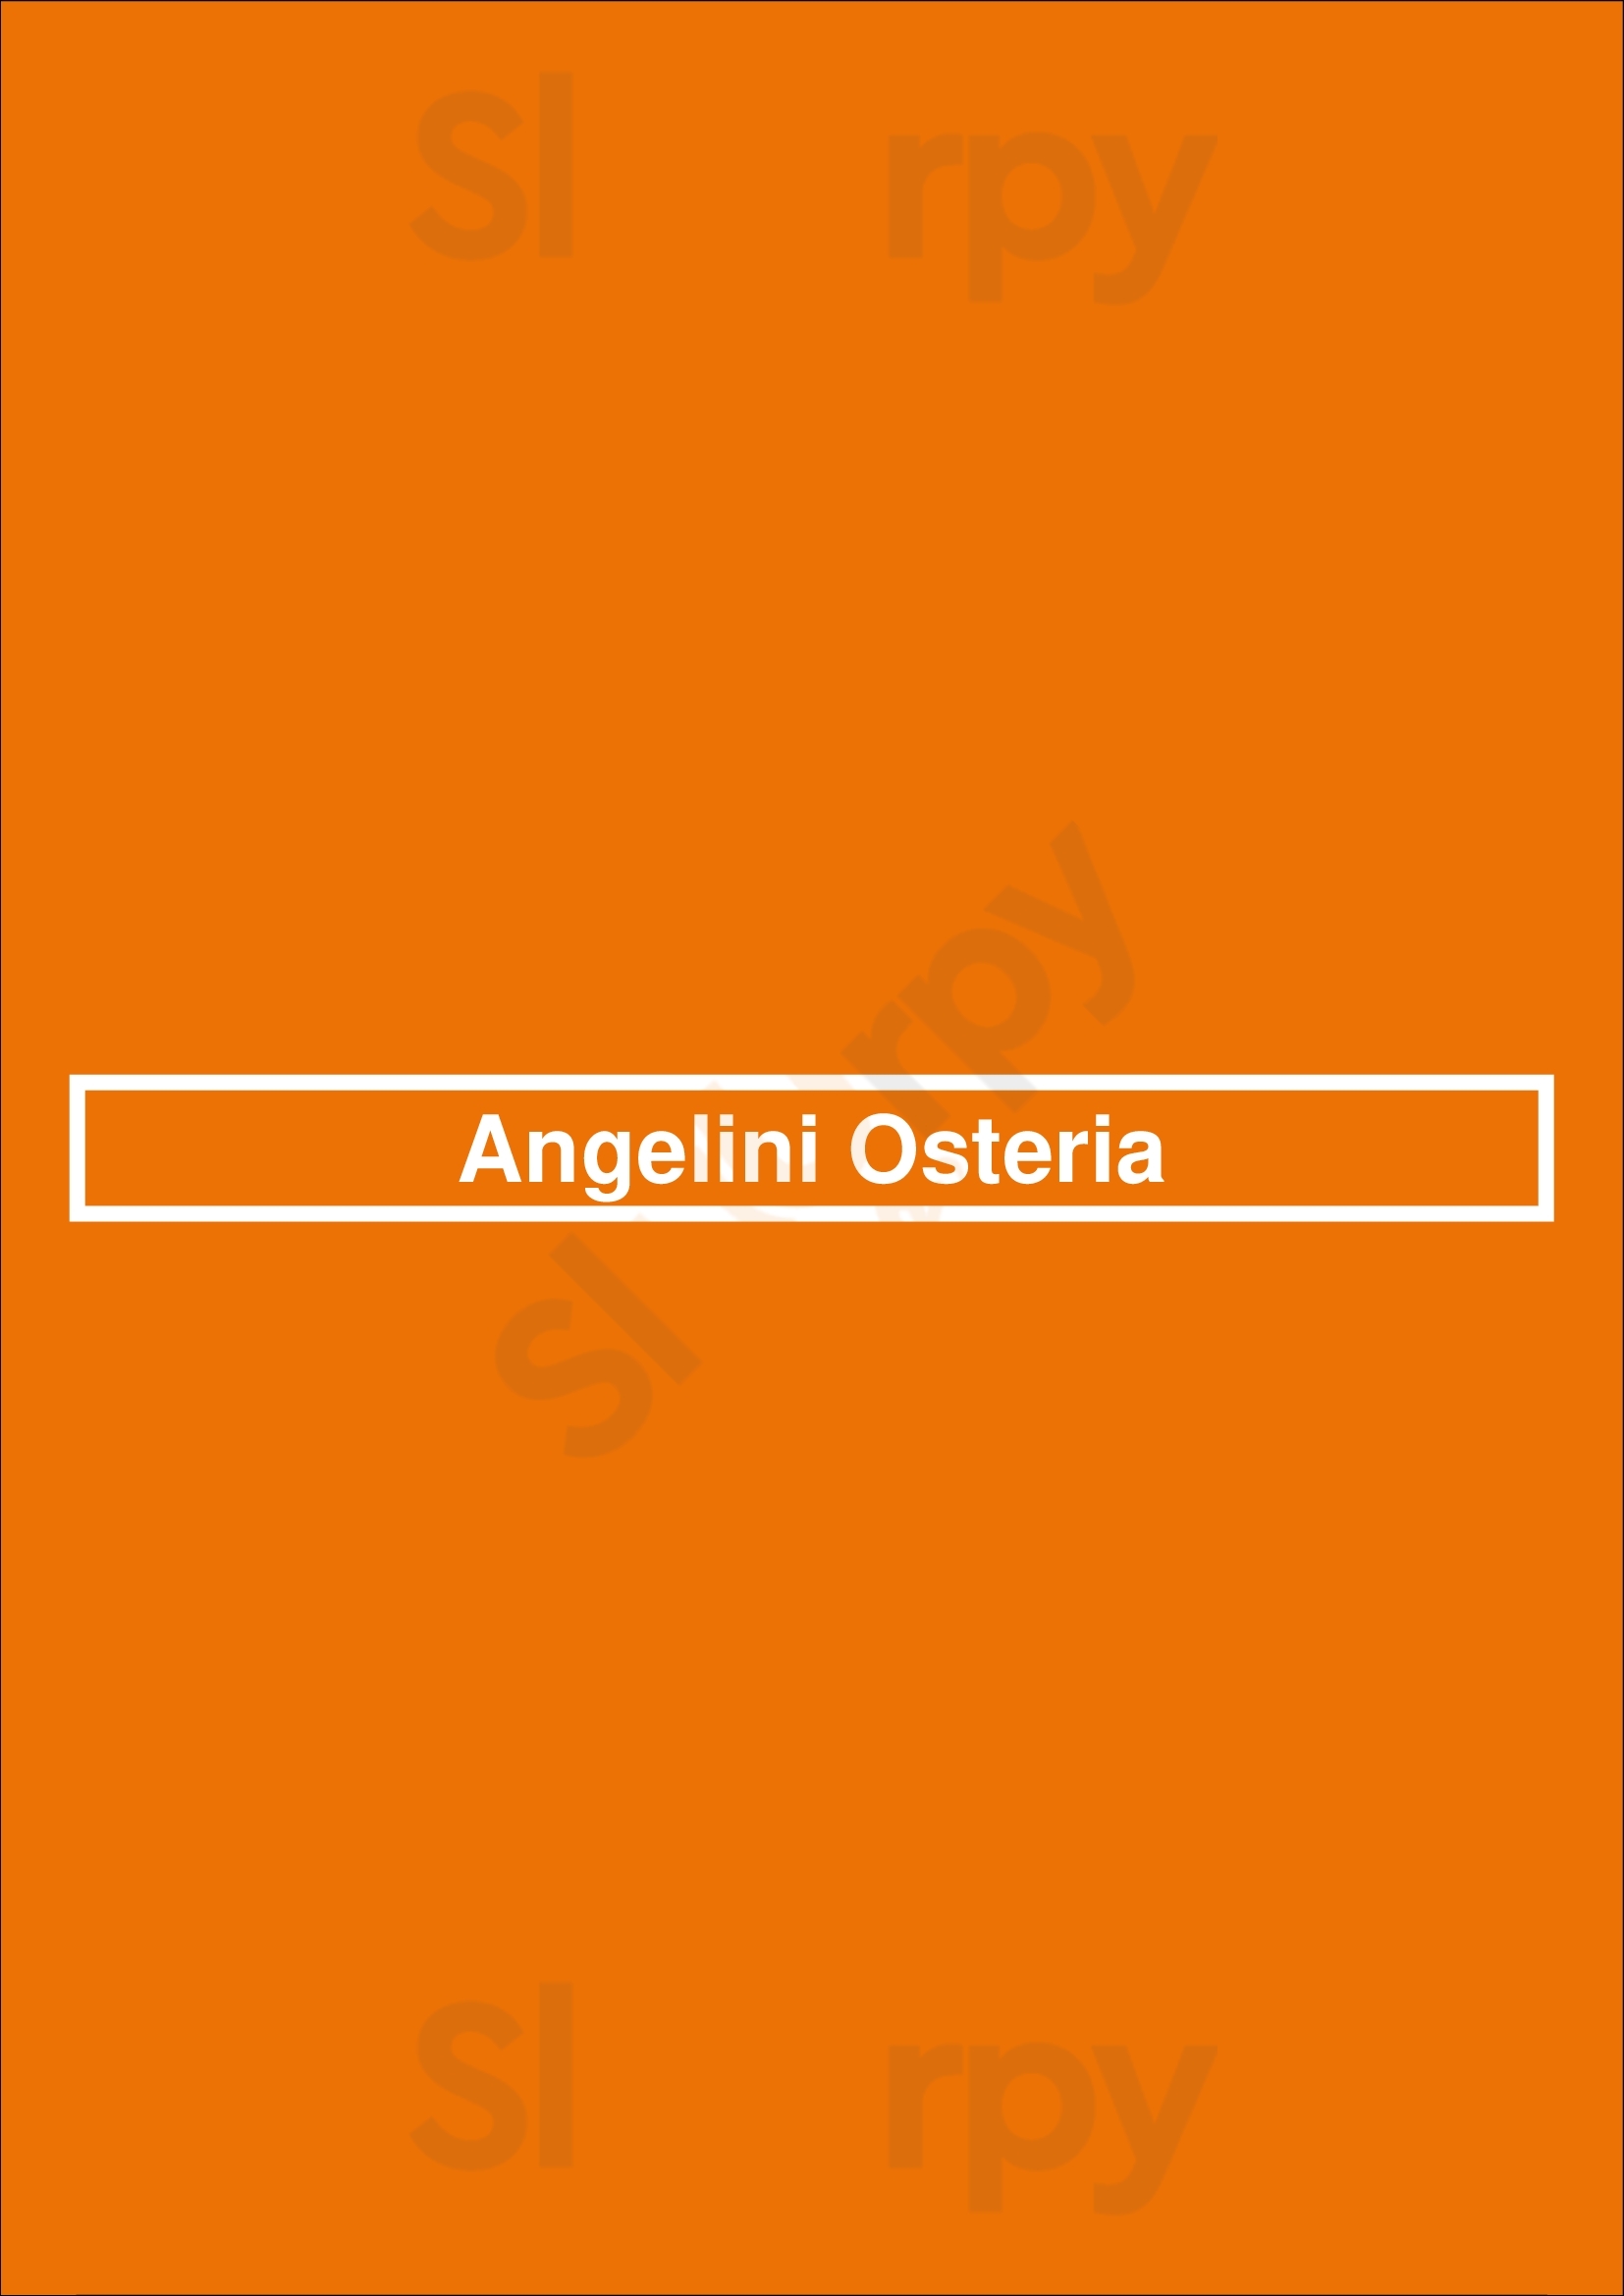 Angelini Osteria Los Angeles Menu - 1